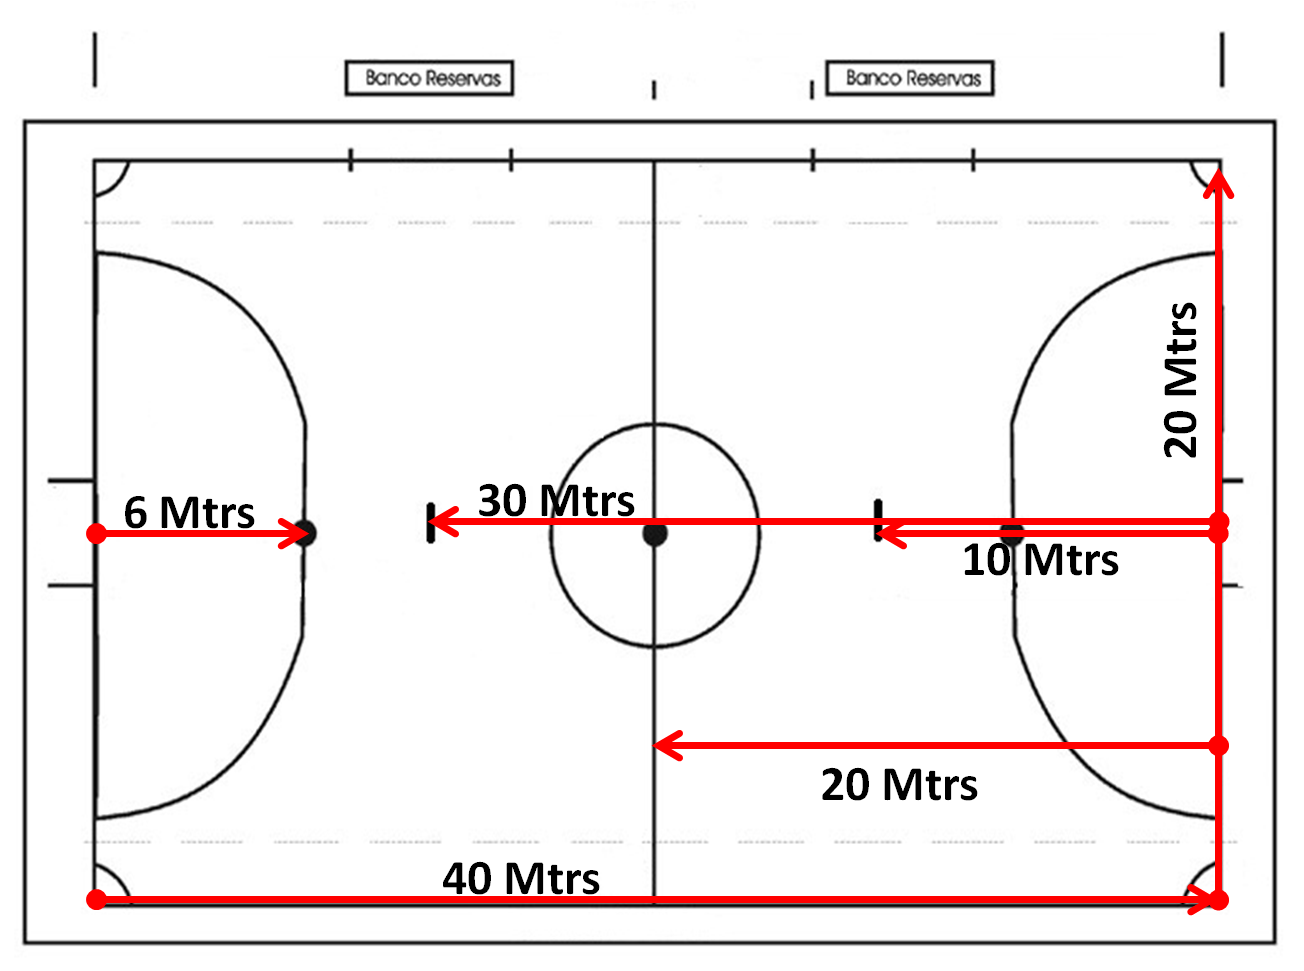 A Quadra de Futsal: Tamanho, Medidas, Áreas e Traves 